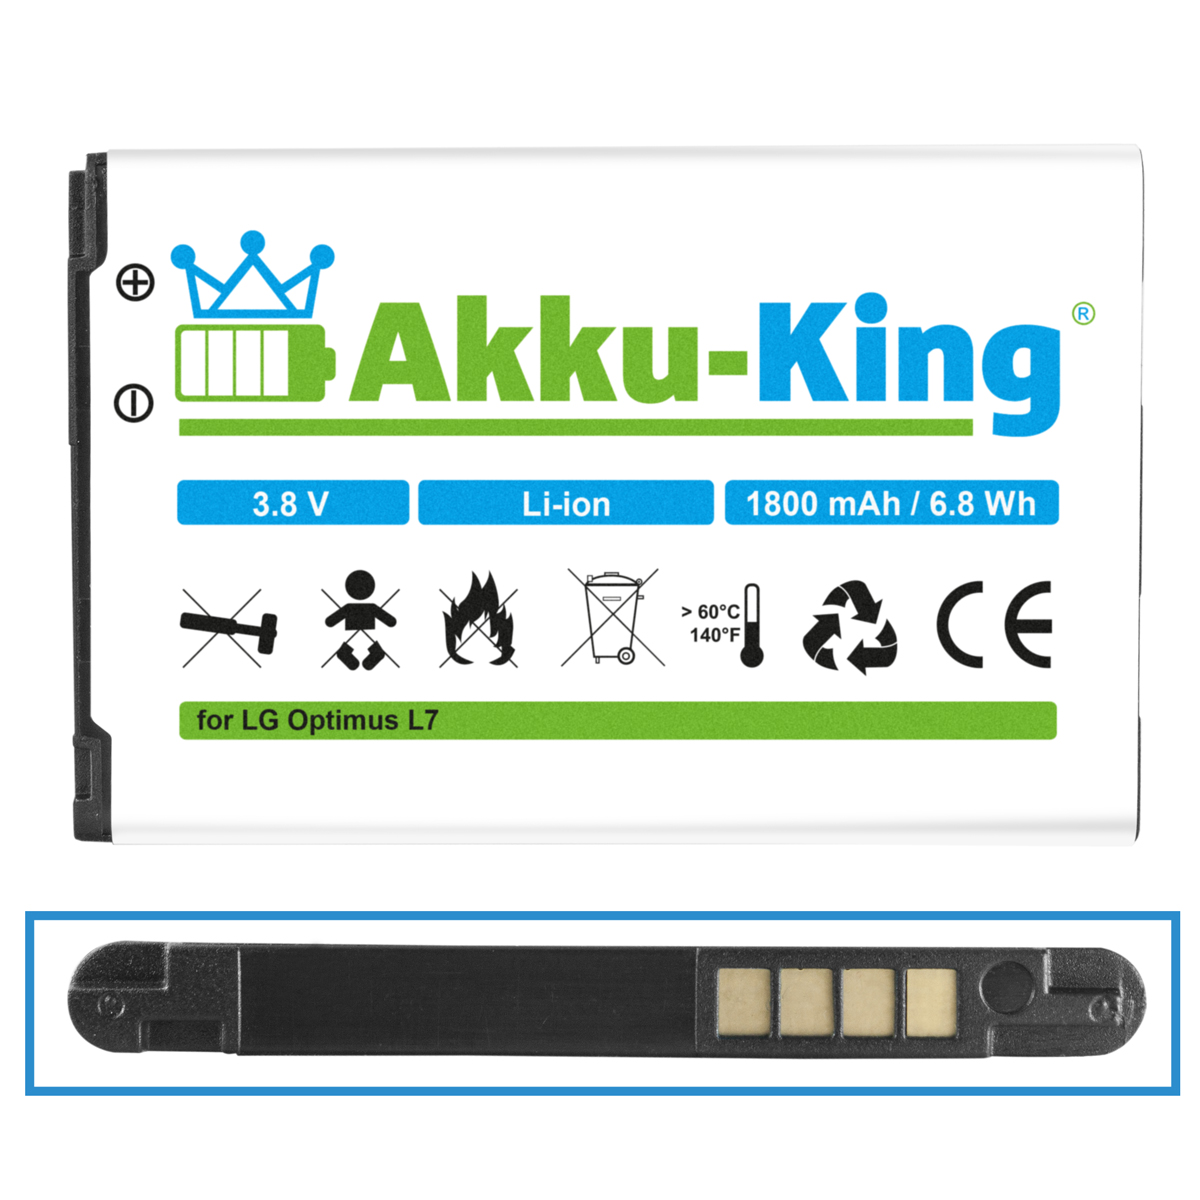 3.8 kompatibel mit Volt, LG BL-44JH Akku Li-Ion Handy-Akku, 1800mAh AKKU-KING